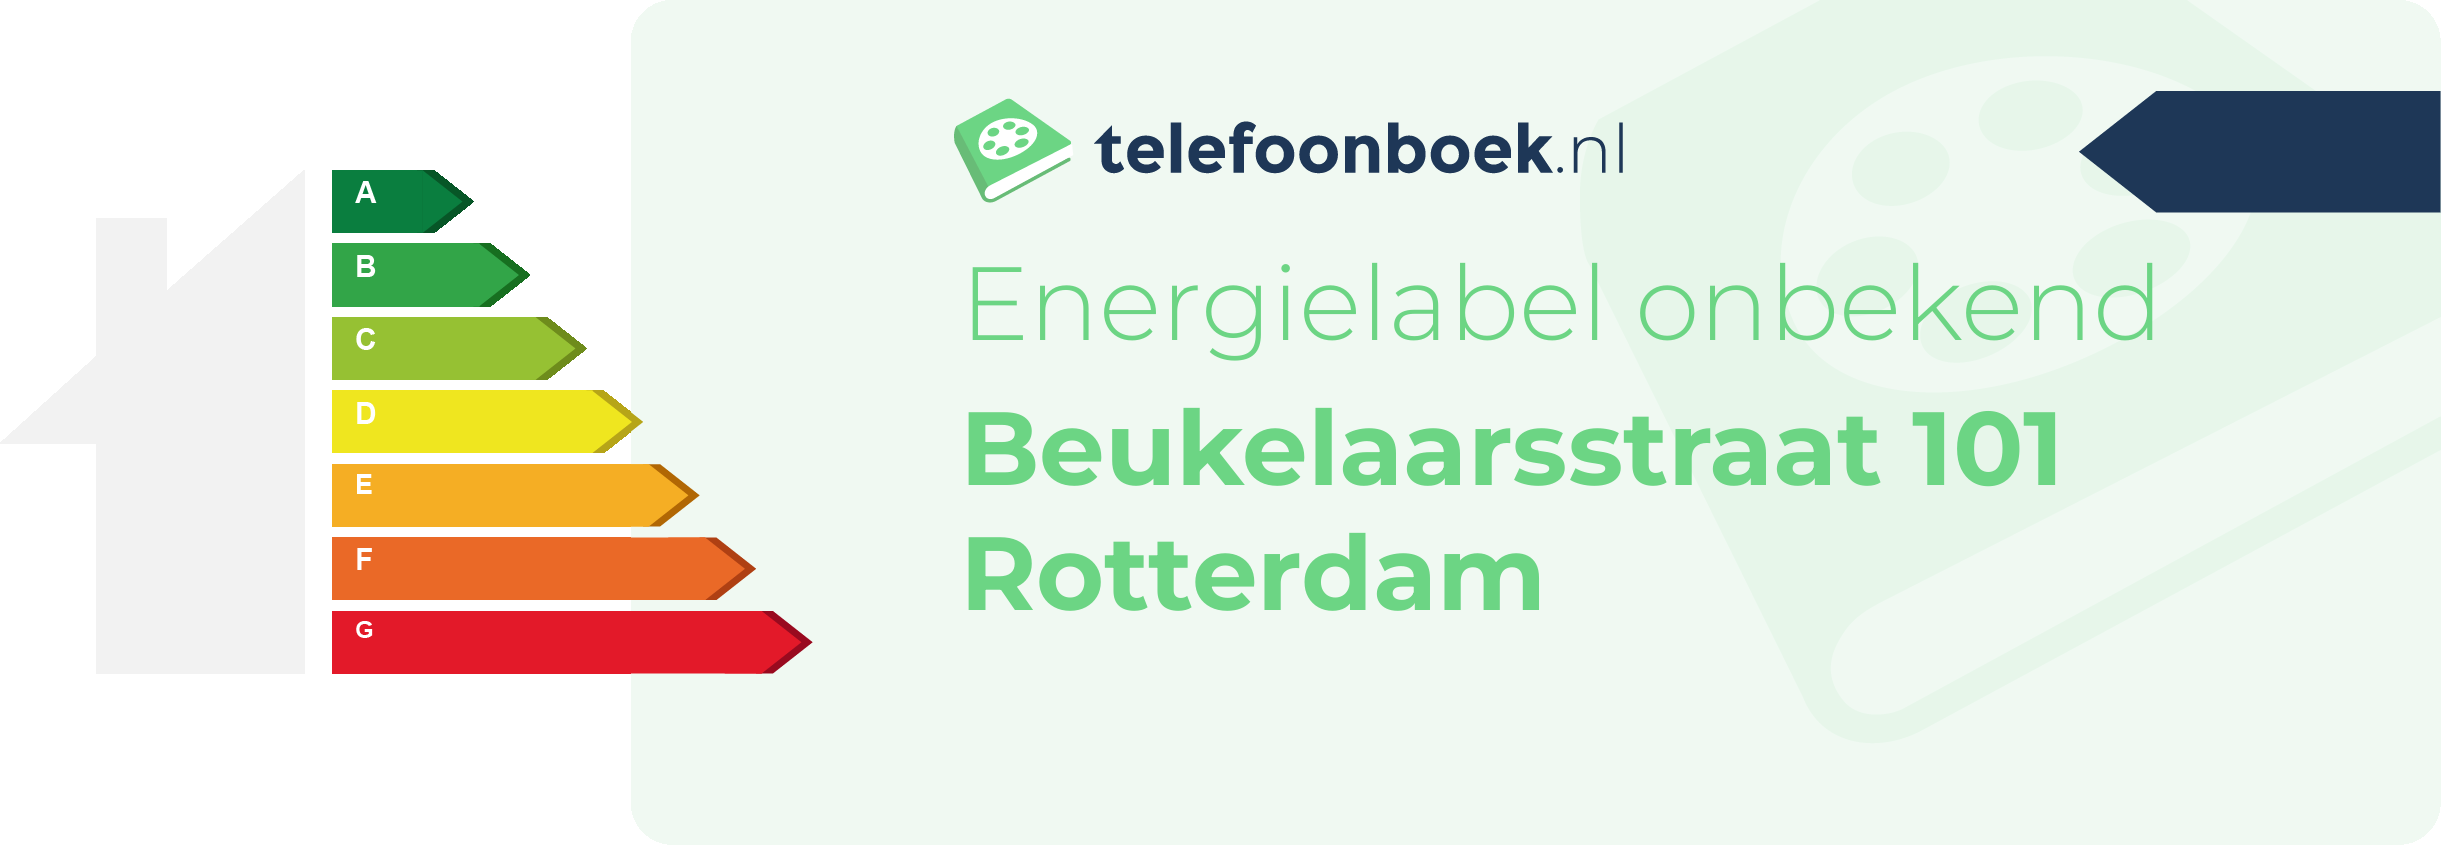 Energielabel Beukelaarsstraat 101 Rotterdam